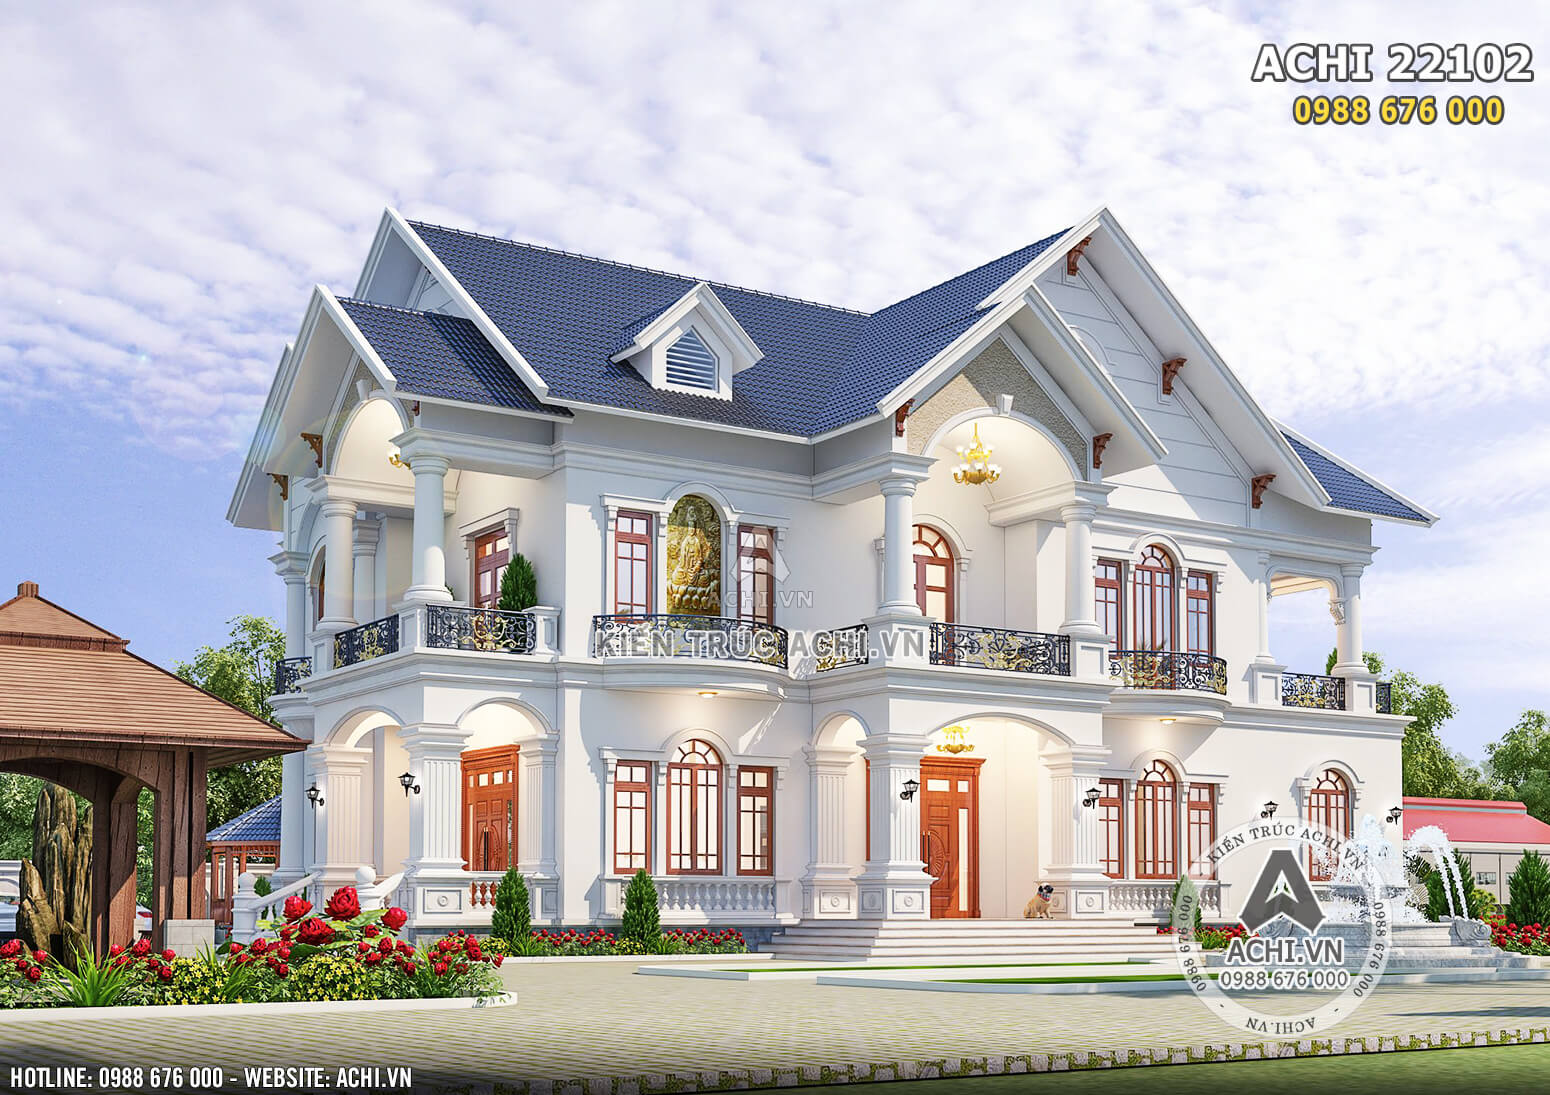 Biệt Thự Nhà Vườn Mái Thái 2 Tầng Đẹp Nhất 2021 - Achi 22102